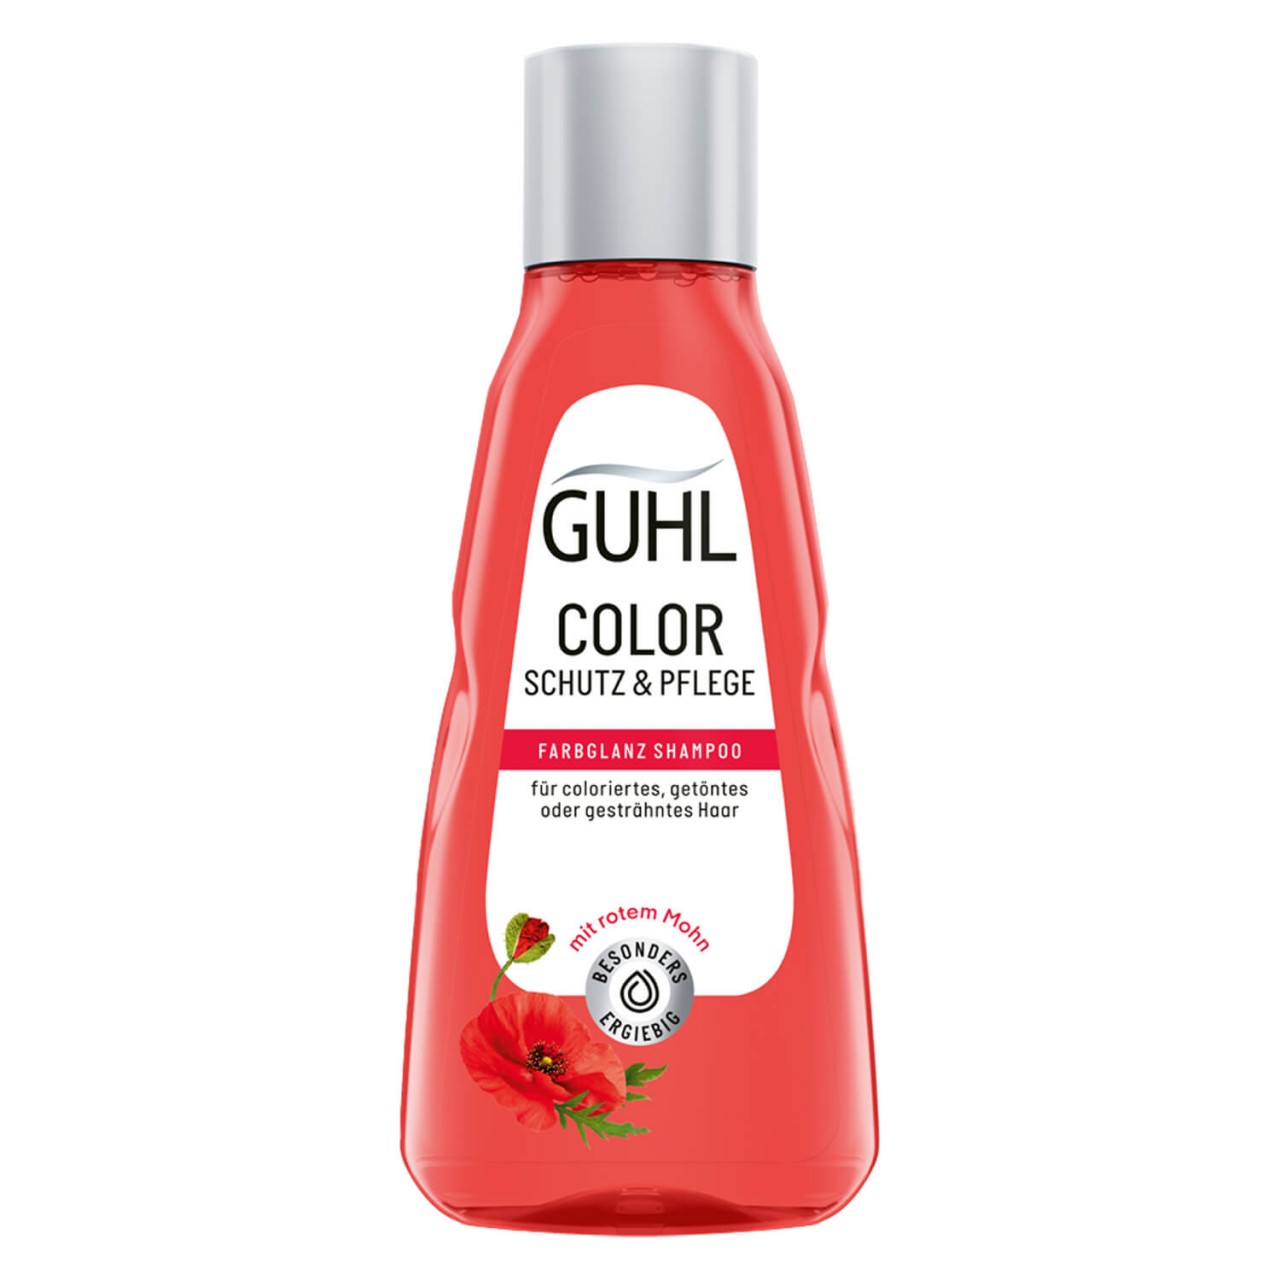 GUHL - COLOR SCHUTZ & PFLEGE Shampoo von GUHL